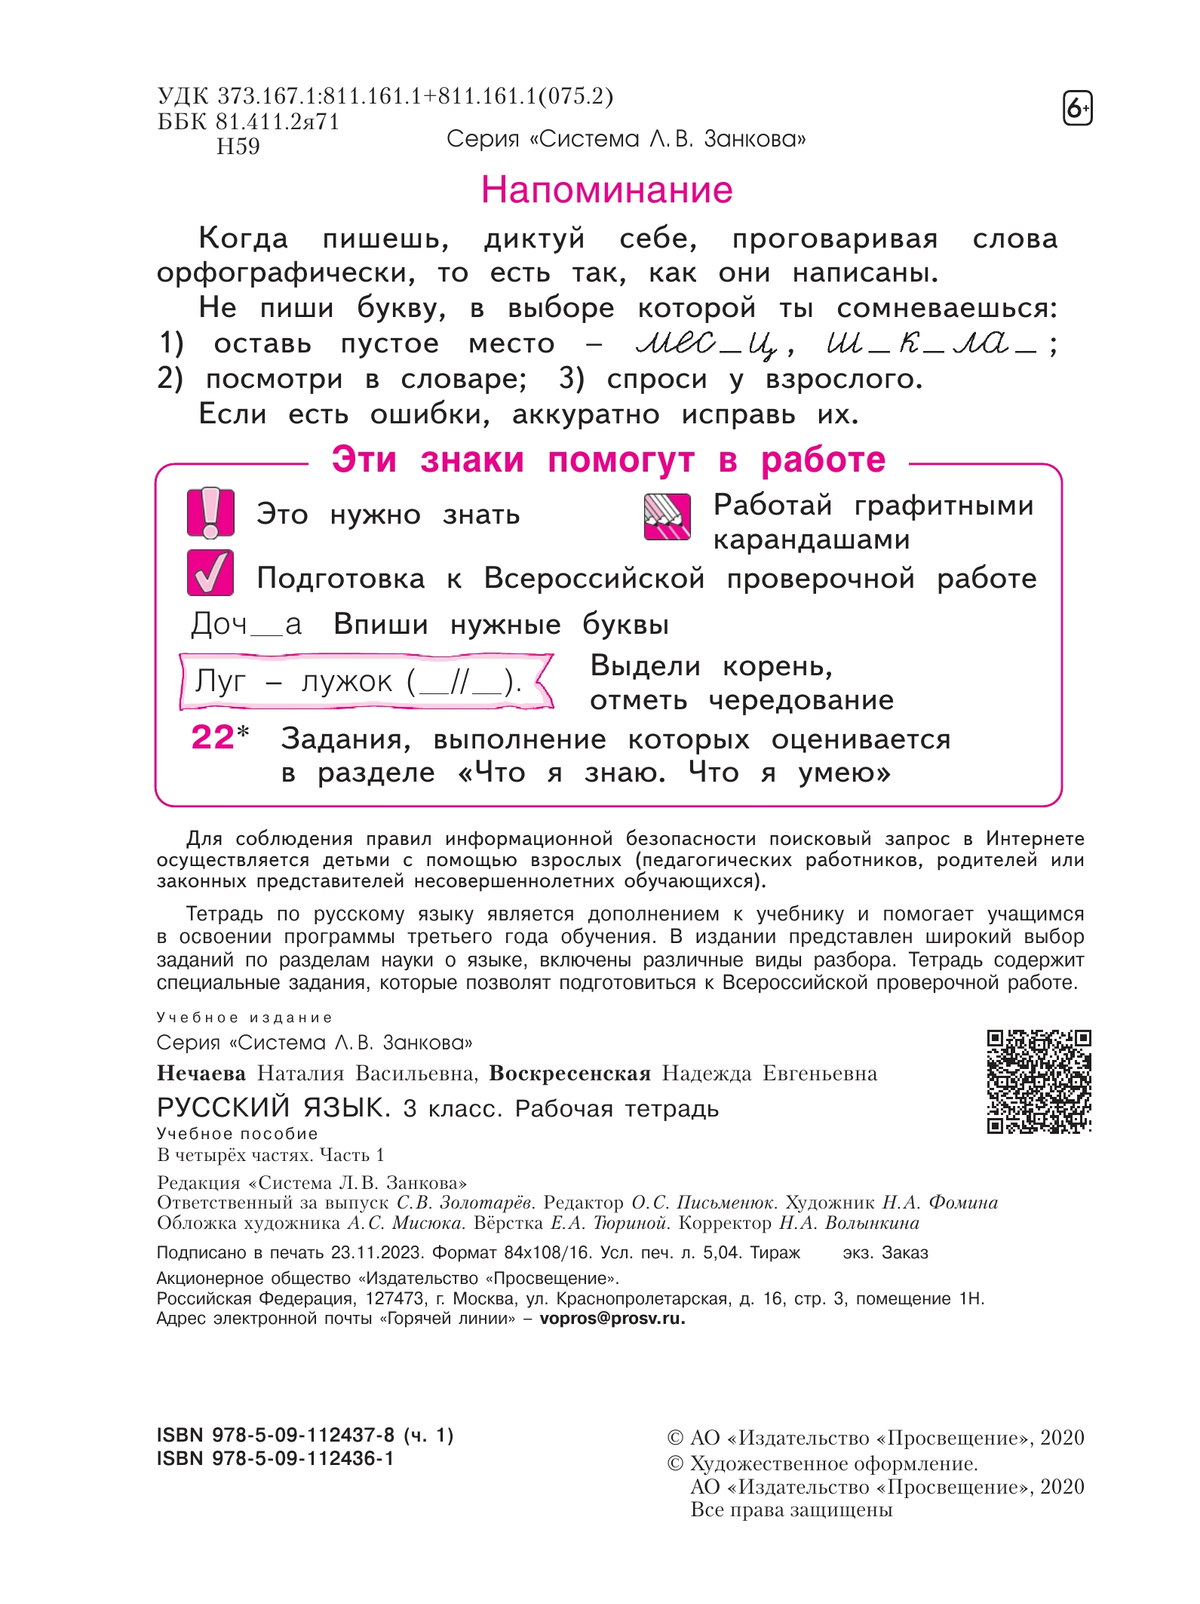 Русский язык. Рабочая тетрадь. 3 класс. В 4-х частях. Часть 1 6